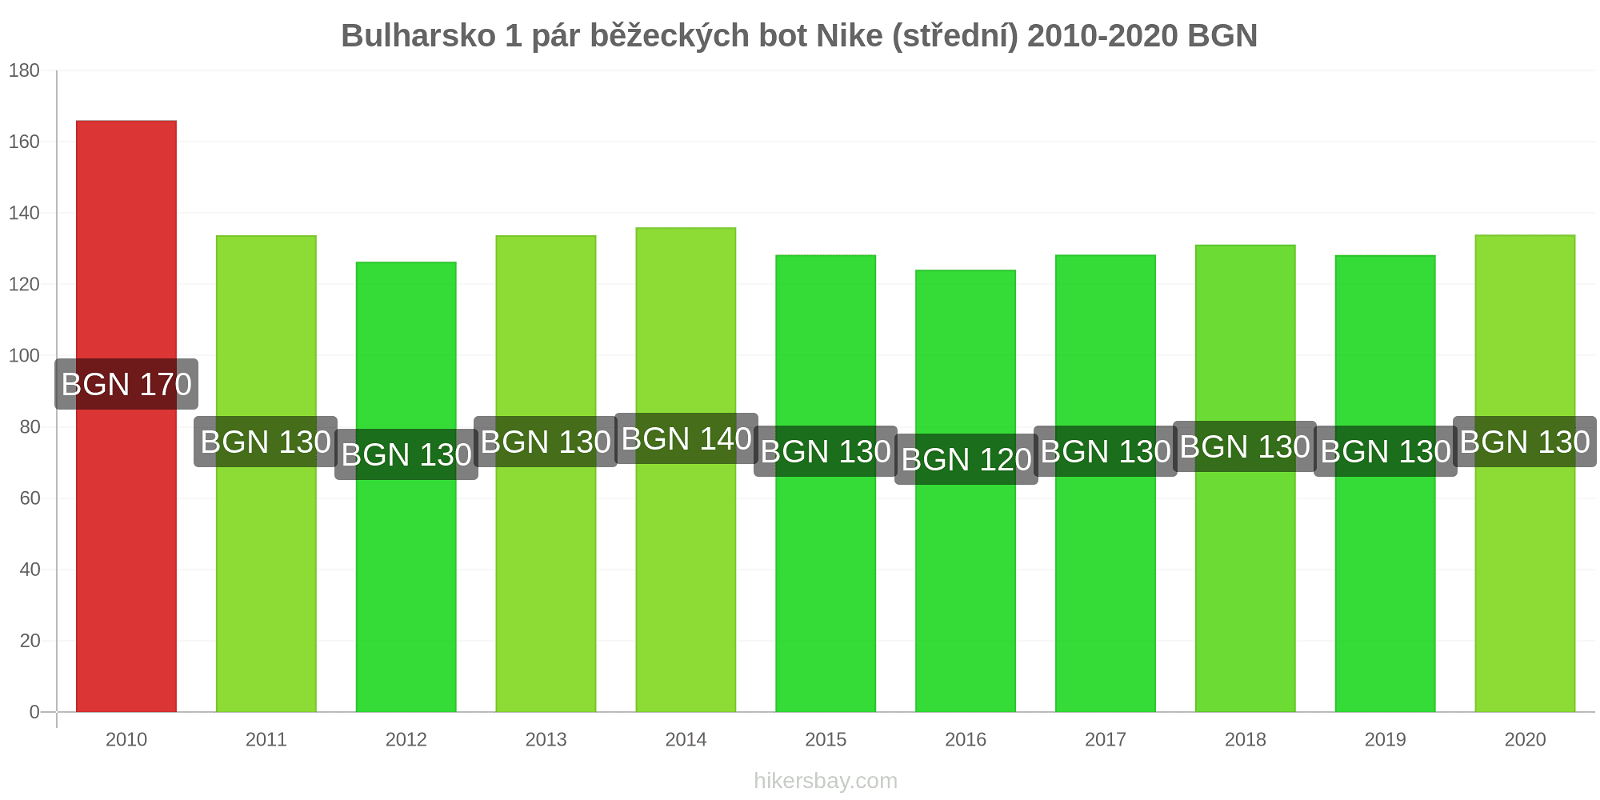 Bulharsko změny cen 1 pár běžeckých bot Nike (střední) hikersbay.com